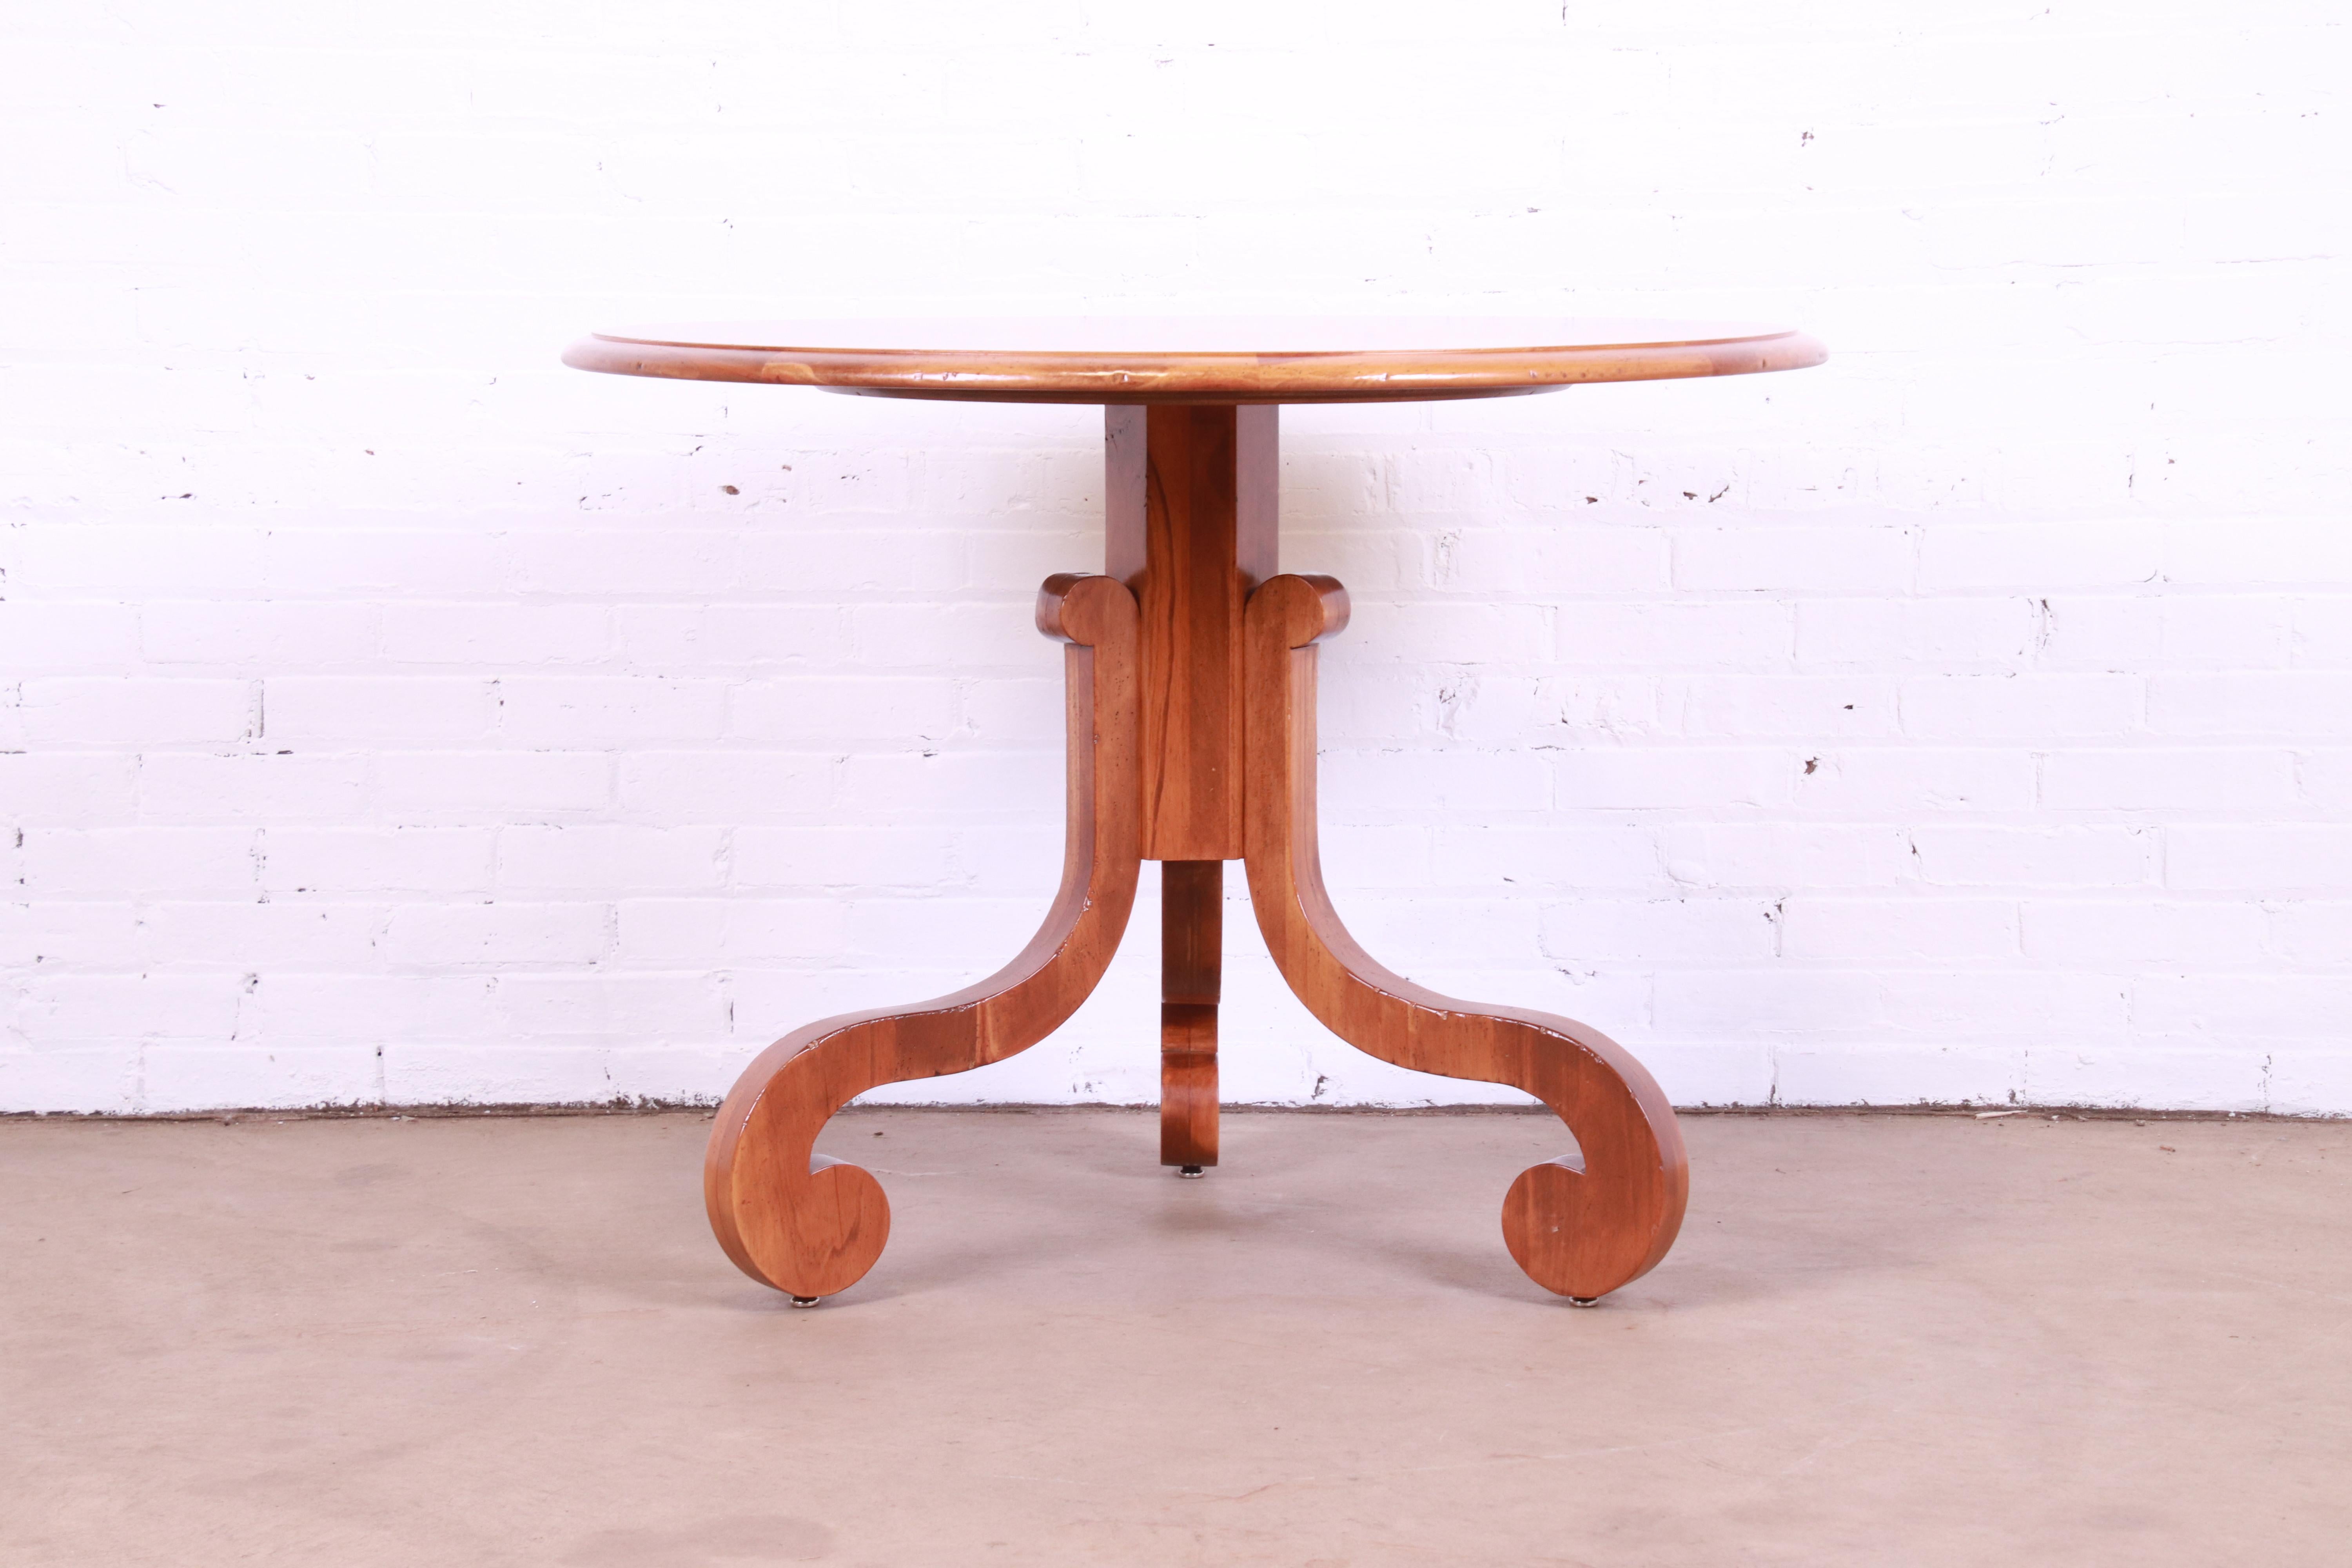 Magnifique table de petit déjeuner ou centre de table en bois fruitier de style Empire français

Par Baker Furniture, collection 